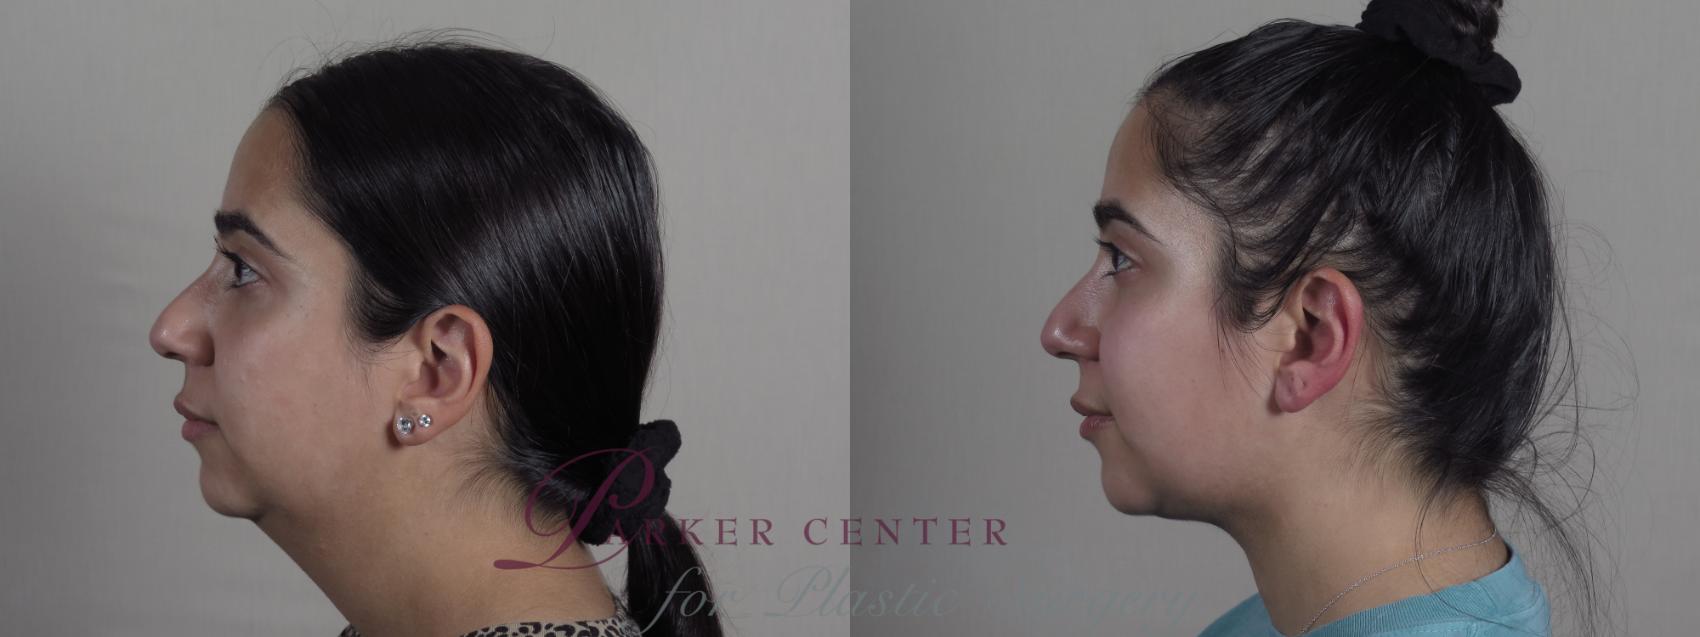 Neck Contouring Case 1215 Before & After View #1  | Paramus, NJ | Parker Center for Plastic Surgery